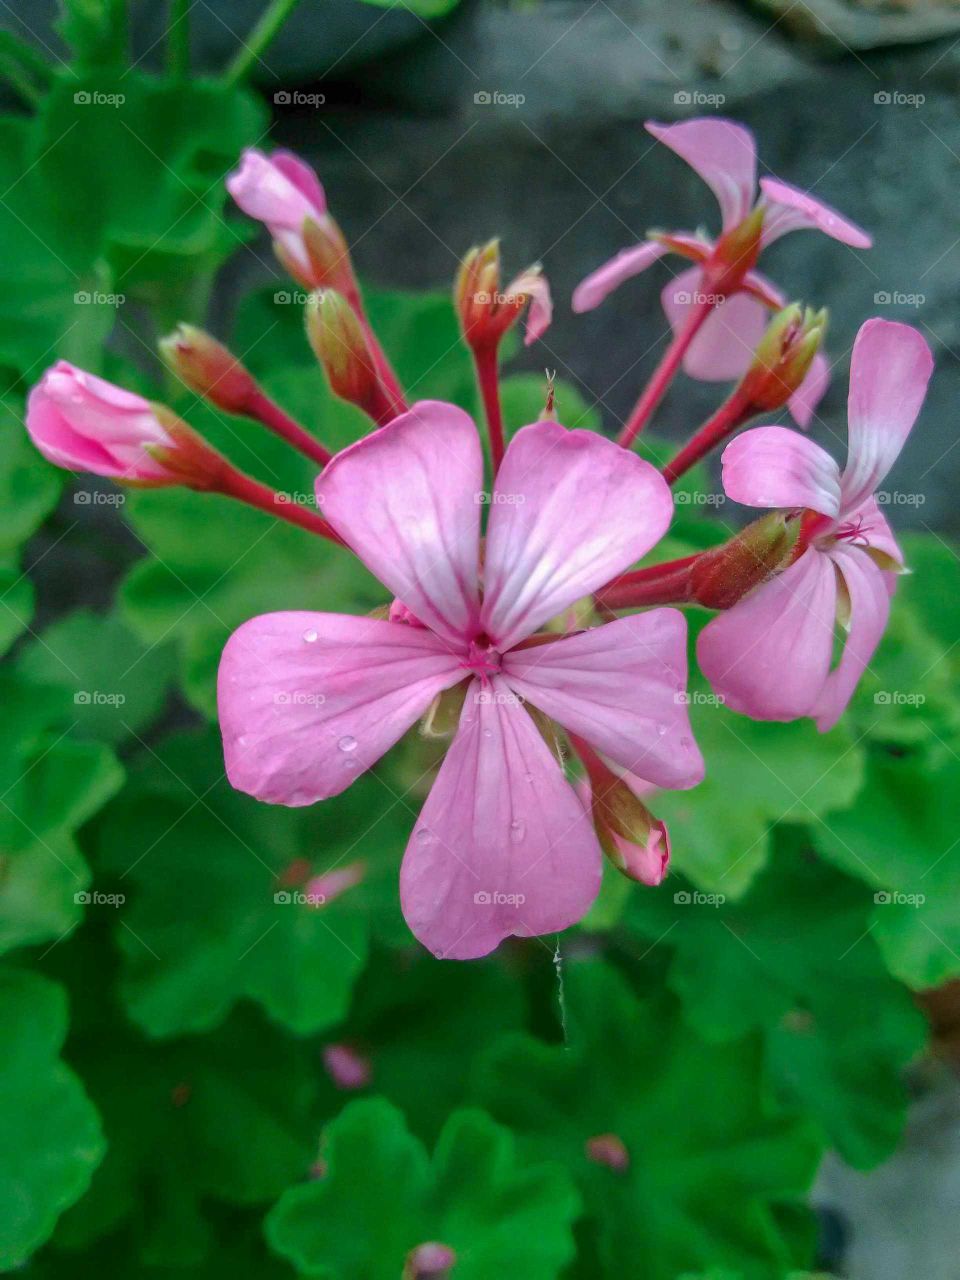 Pink garden geranium flower, close-up.